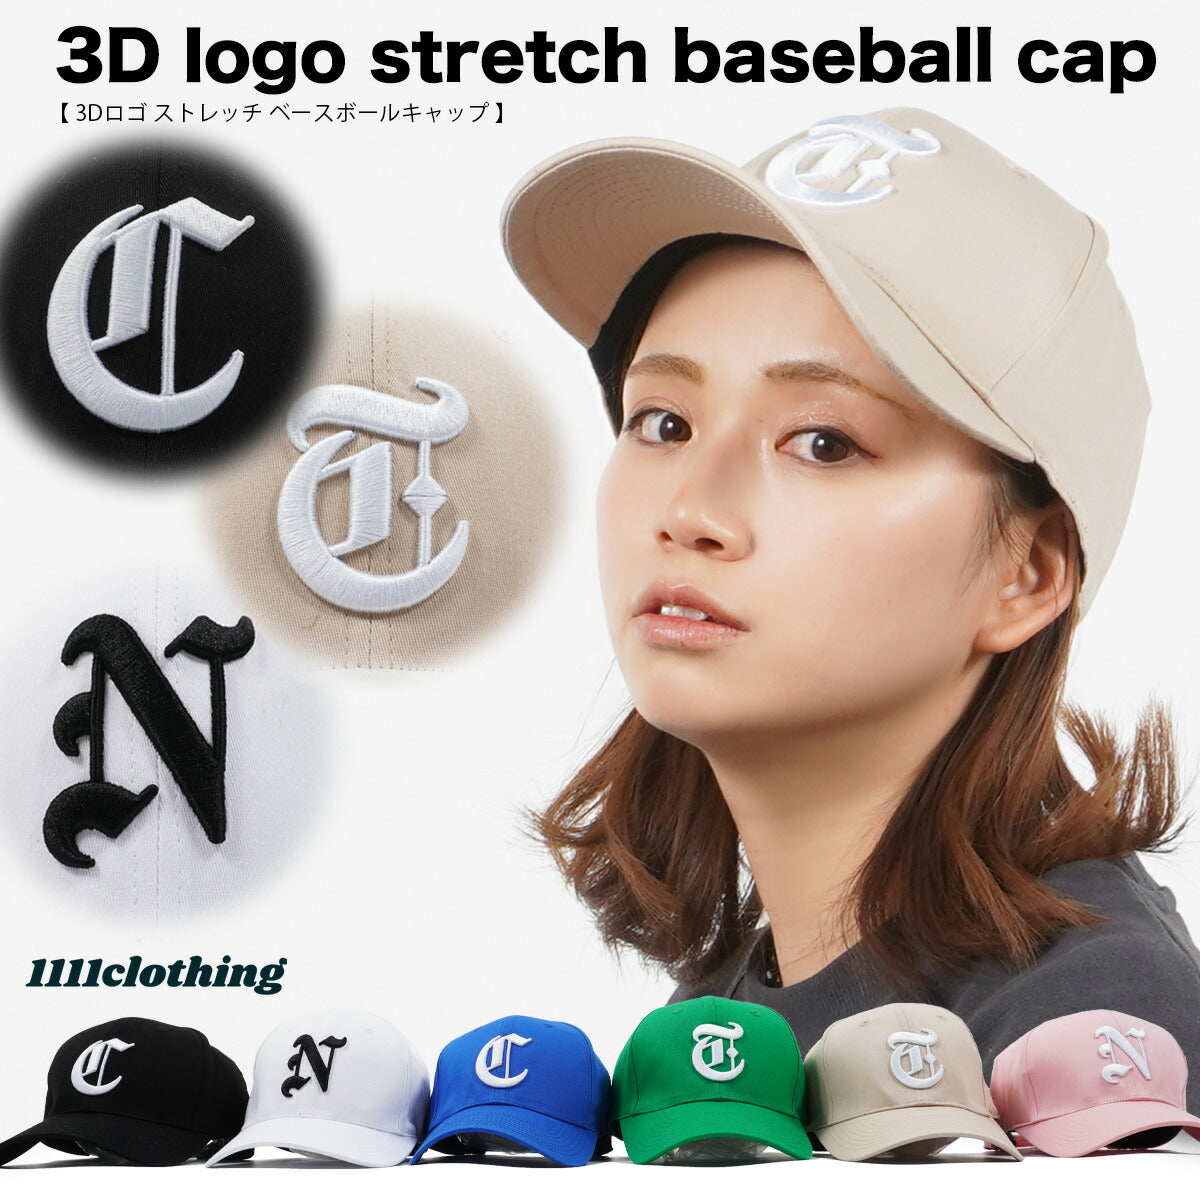 ベースボールキャップ メンズ キャップ レディース 帽子 3dロゴ ストレッチ ベースボールキャップ ワンポイント 刺繍 立体刺繍 男女 サステナブルなecサイト サステナモール